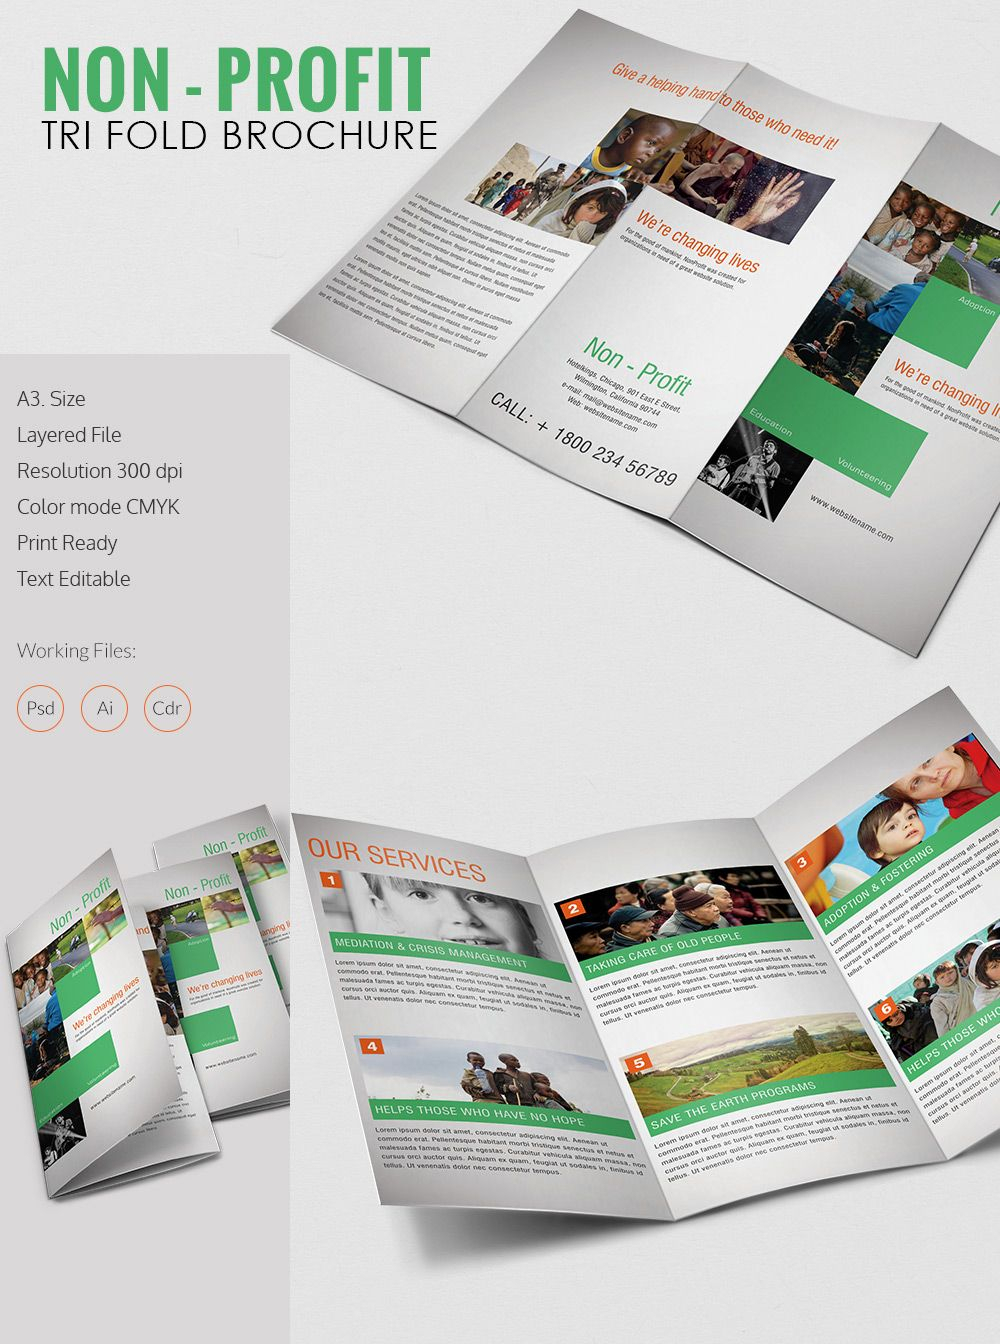 Tri Fold Brochure Template – 43+ Free Word, Pdf, Psd, Eps Inside 3 Fold Brochure Template Psd Free Download